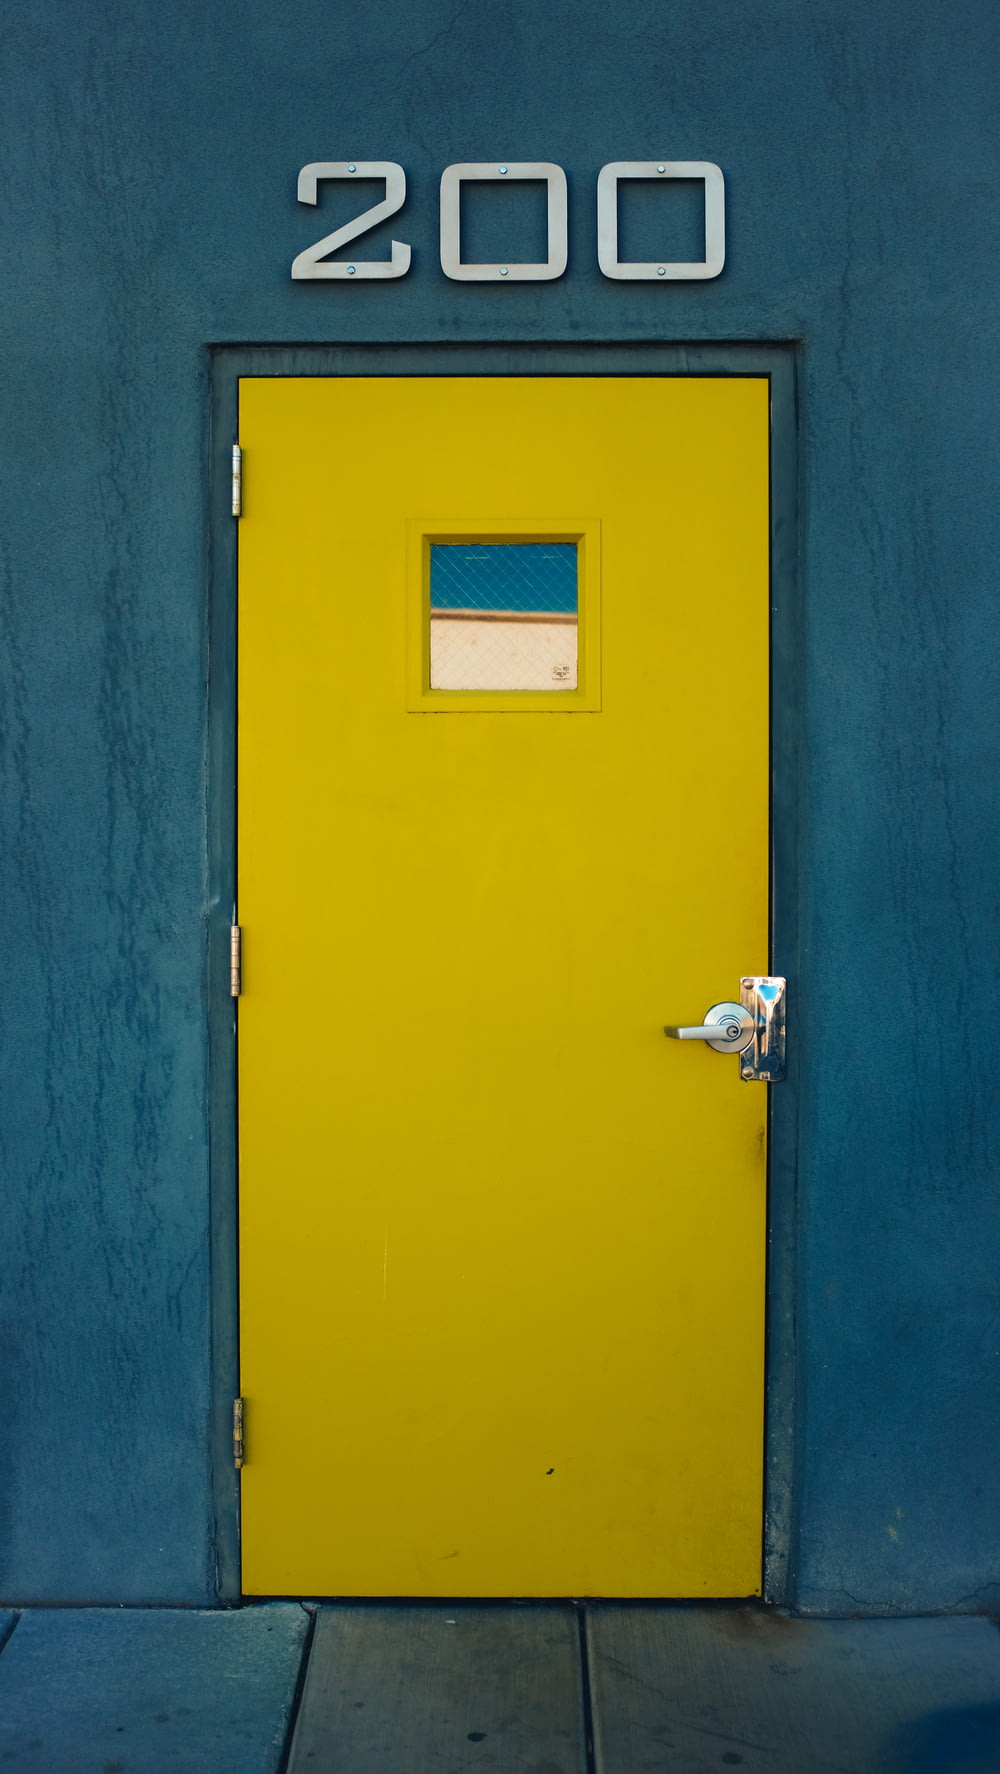 yellow wooden door